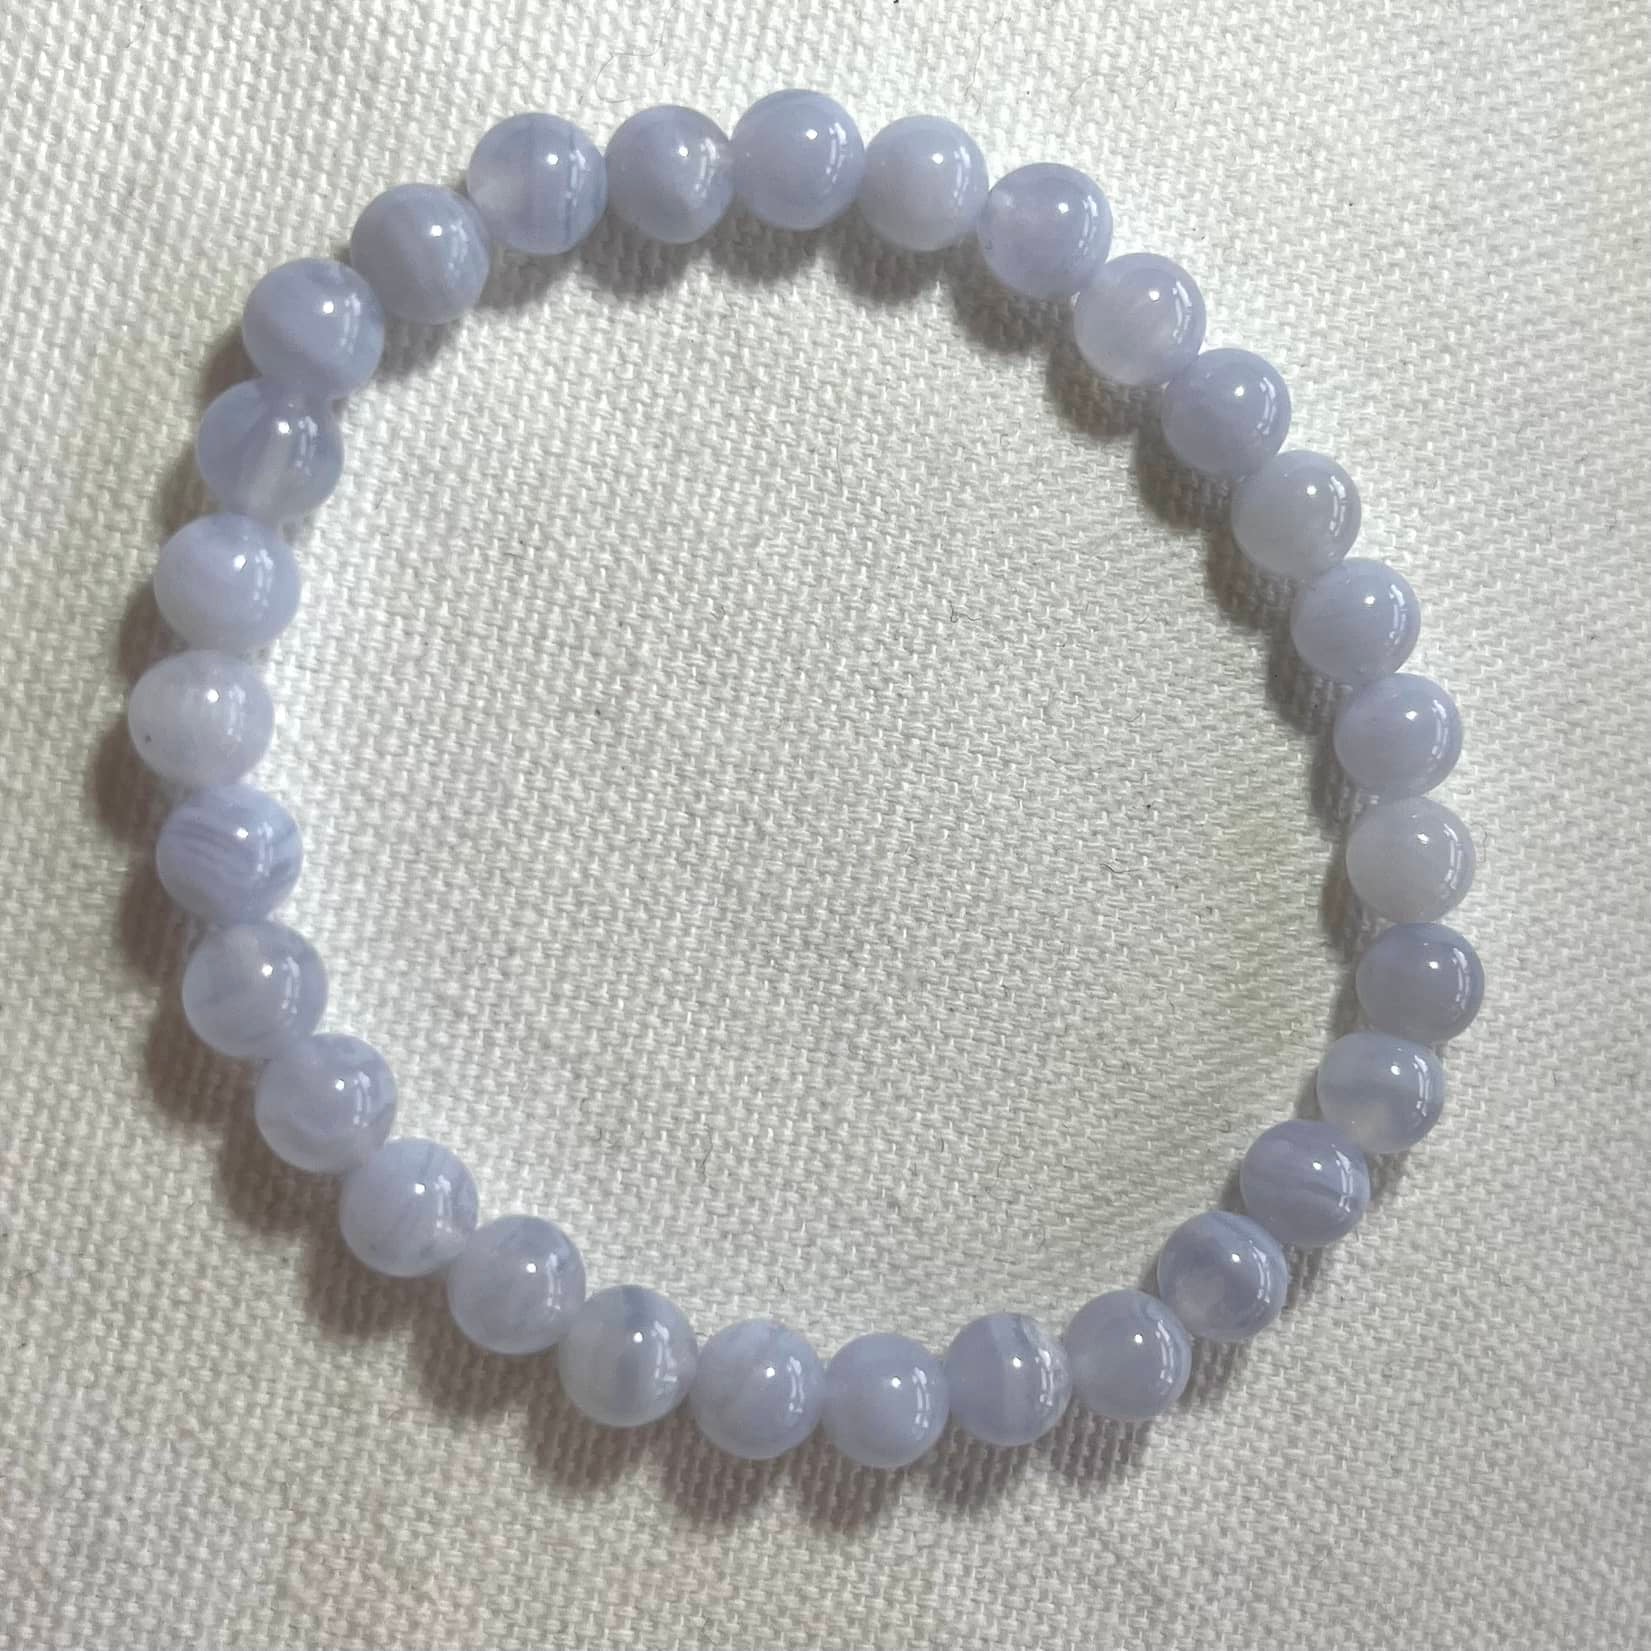 Blue Lace Agate Bracelet - Lithos Crystals